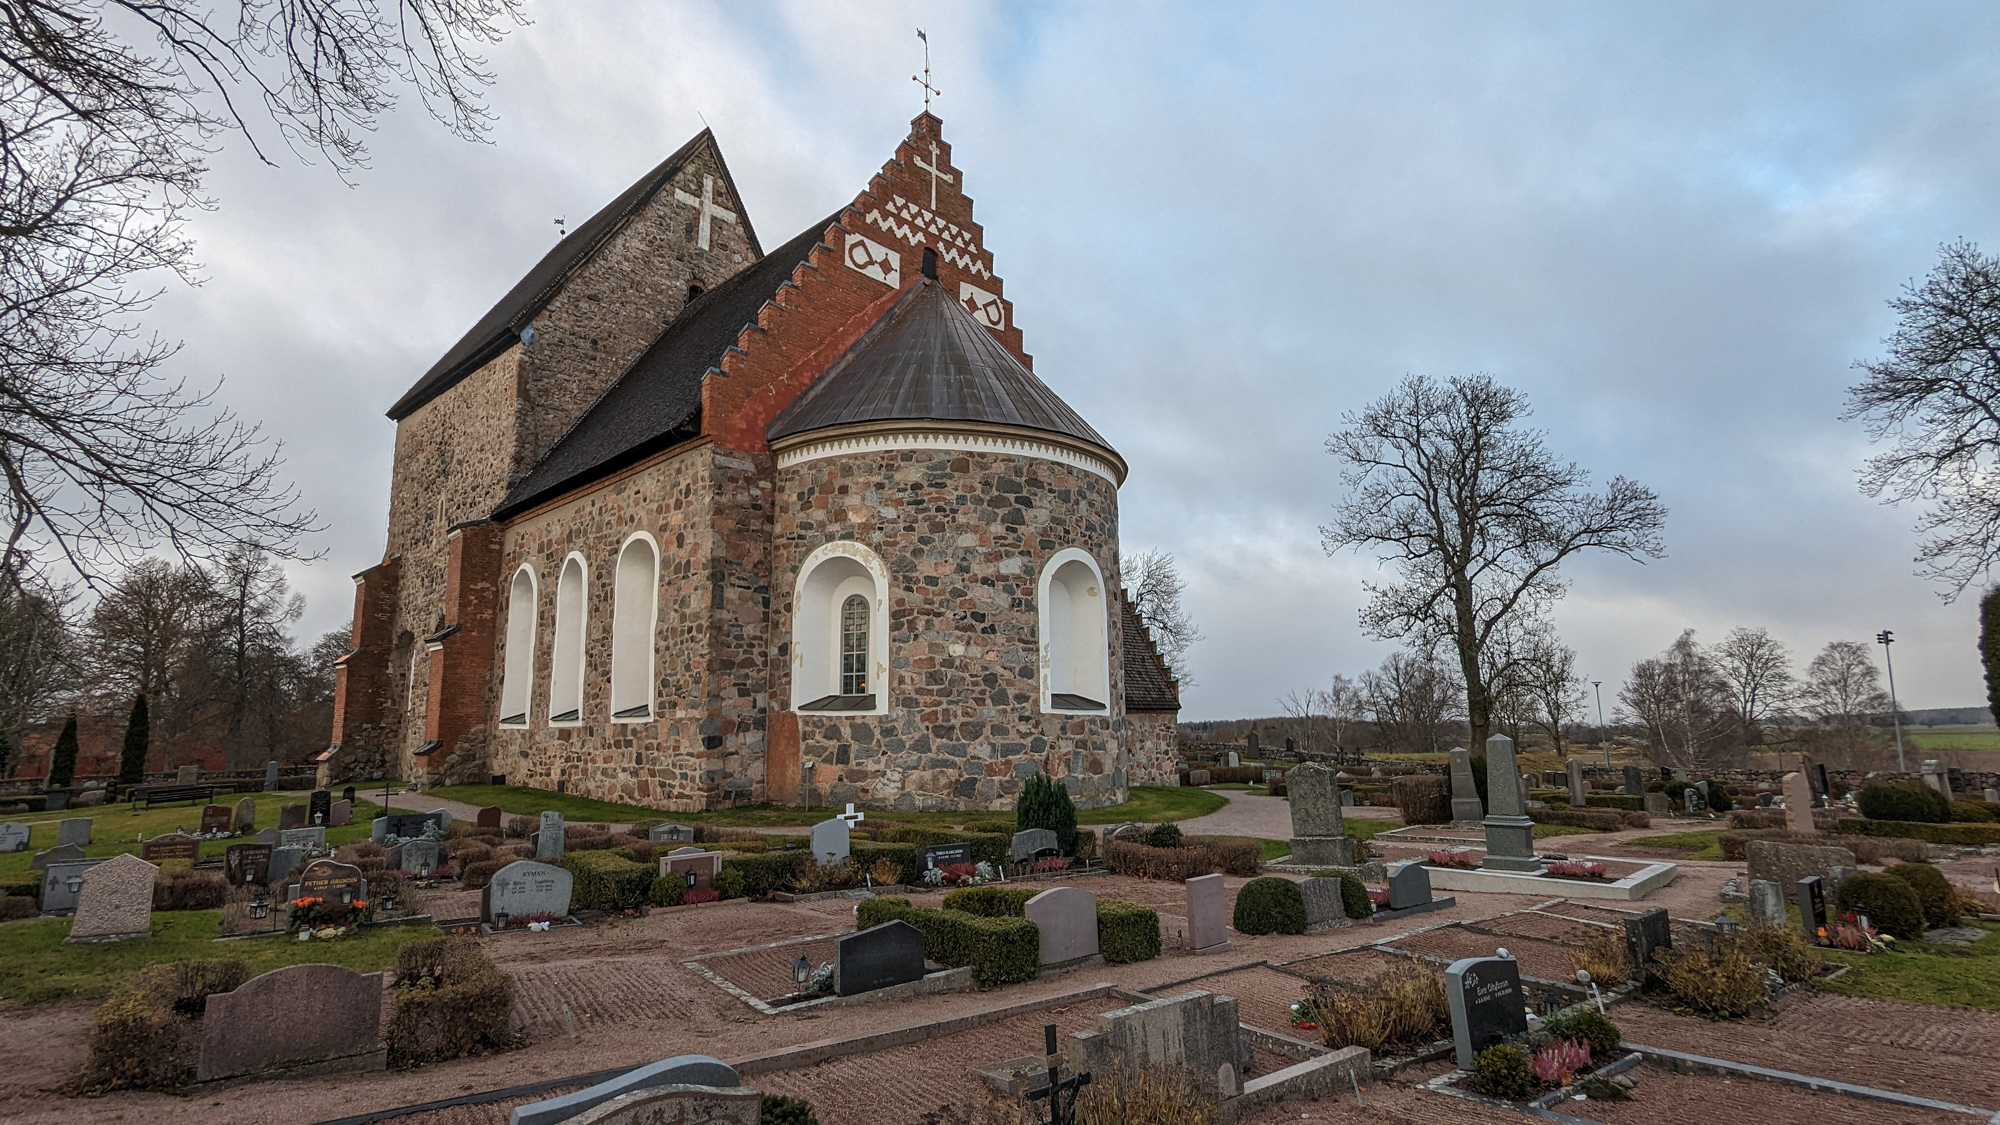 Kostol Gamla Uppsala, postavený už v 11. storočí, pôvodne drevený. Je tu pochvaný napríklad král Eric IX. (12. stor.) alebo fyzik Celsius (18. stor.).